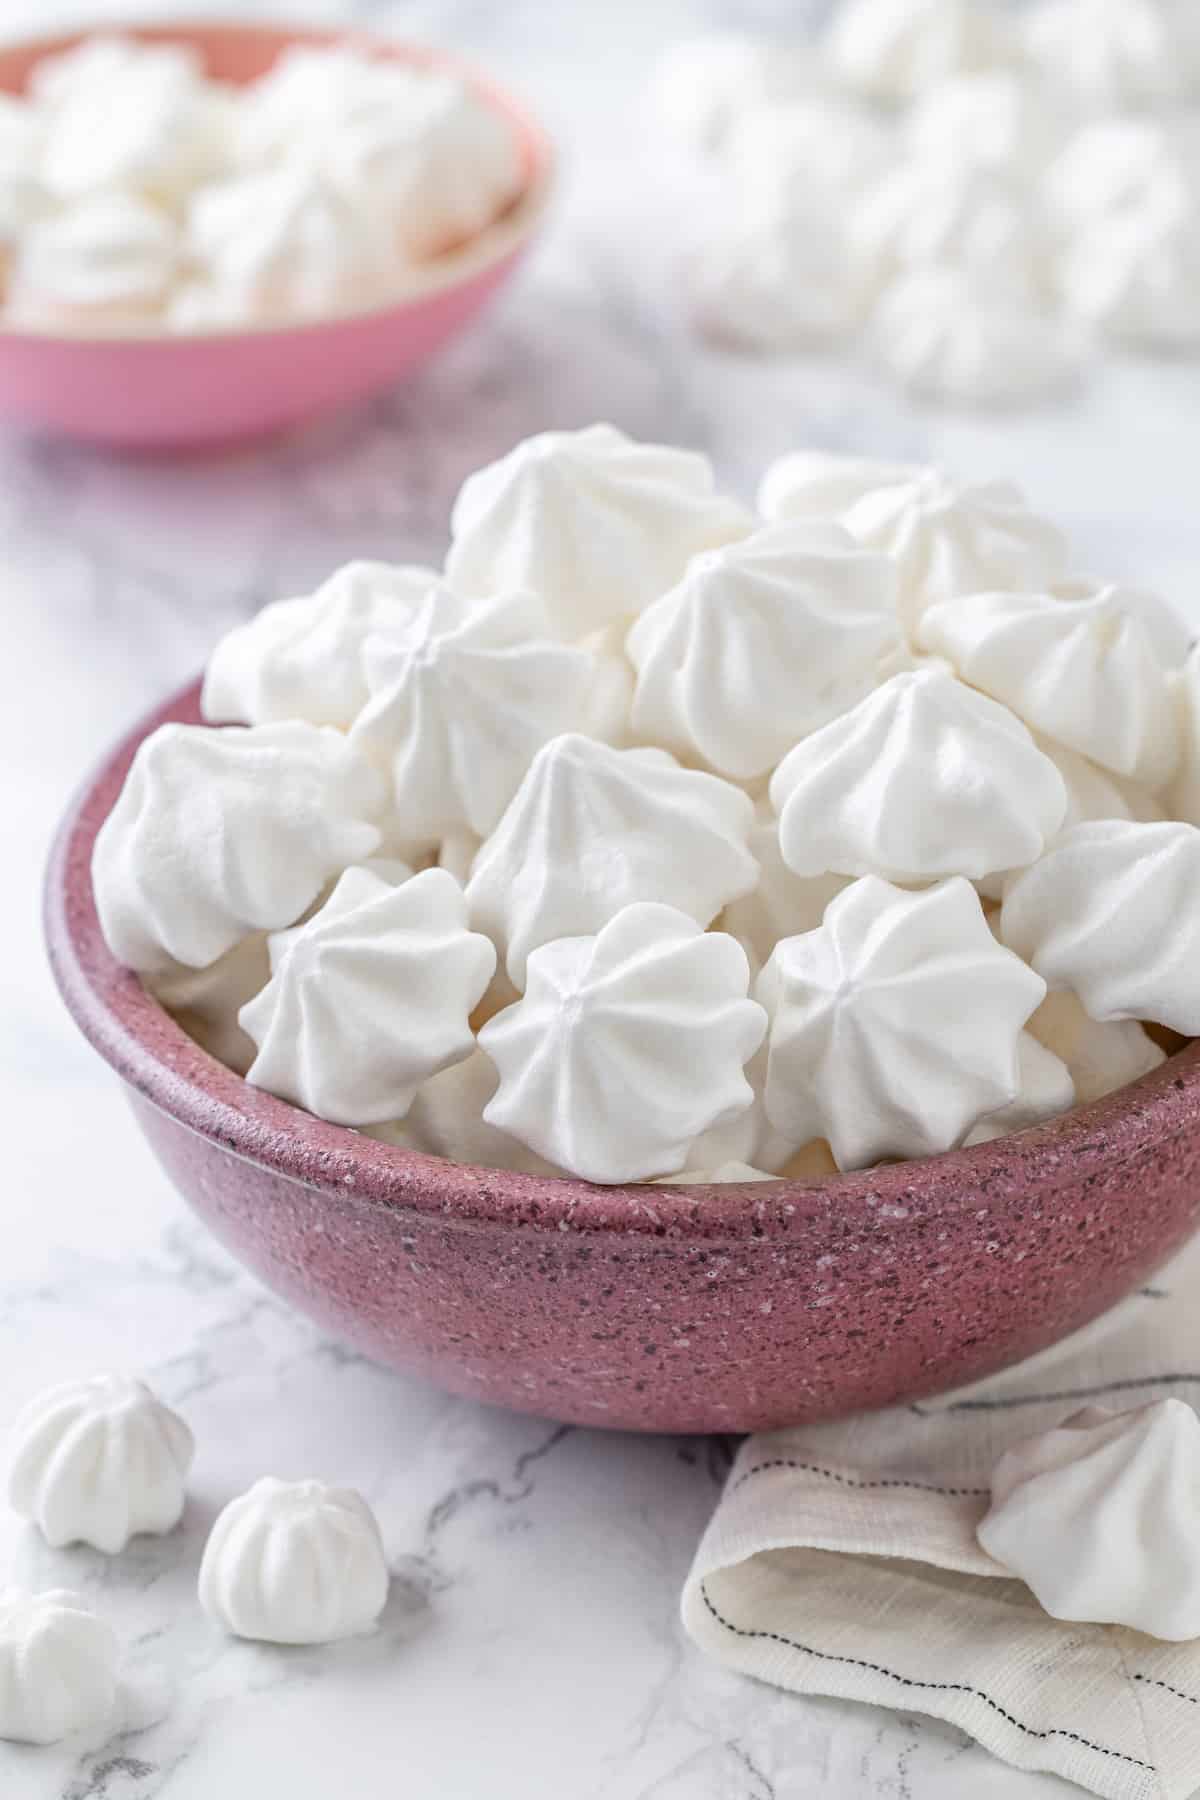 Vegan aquafaba meringues in pink bowls